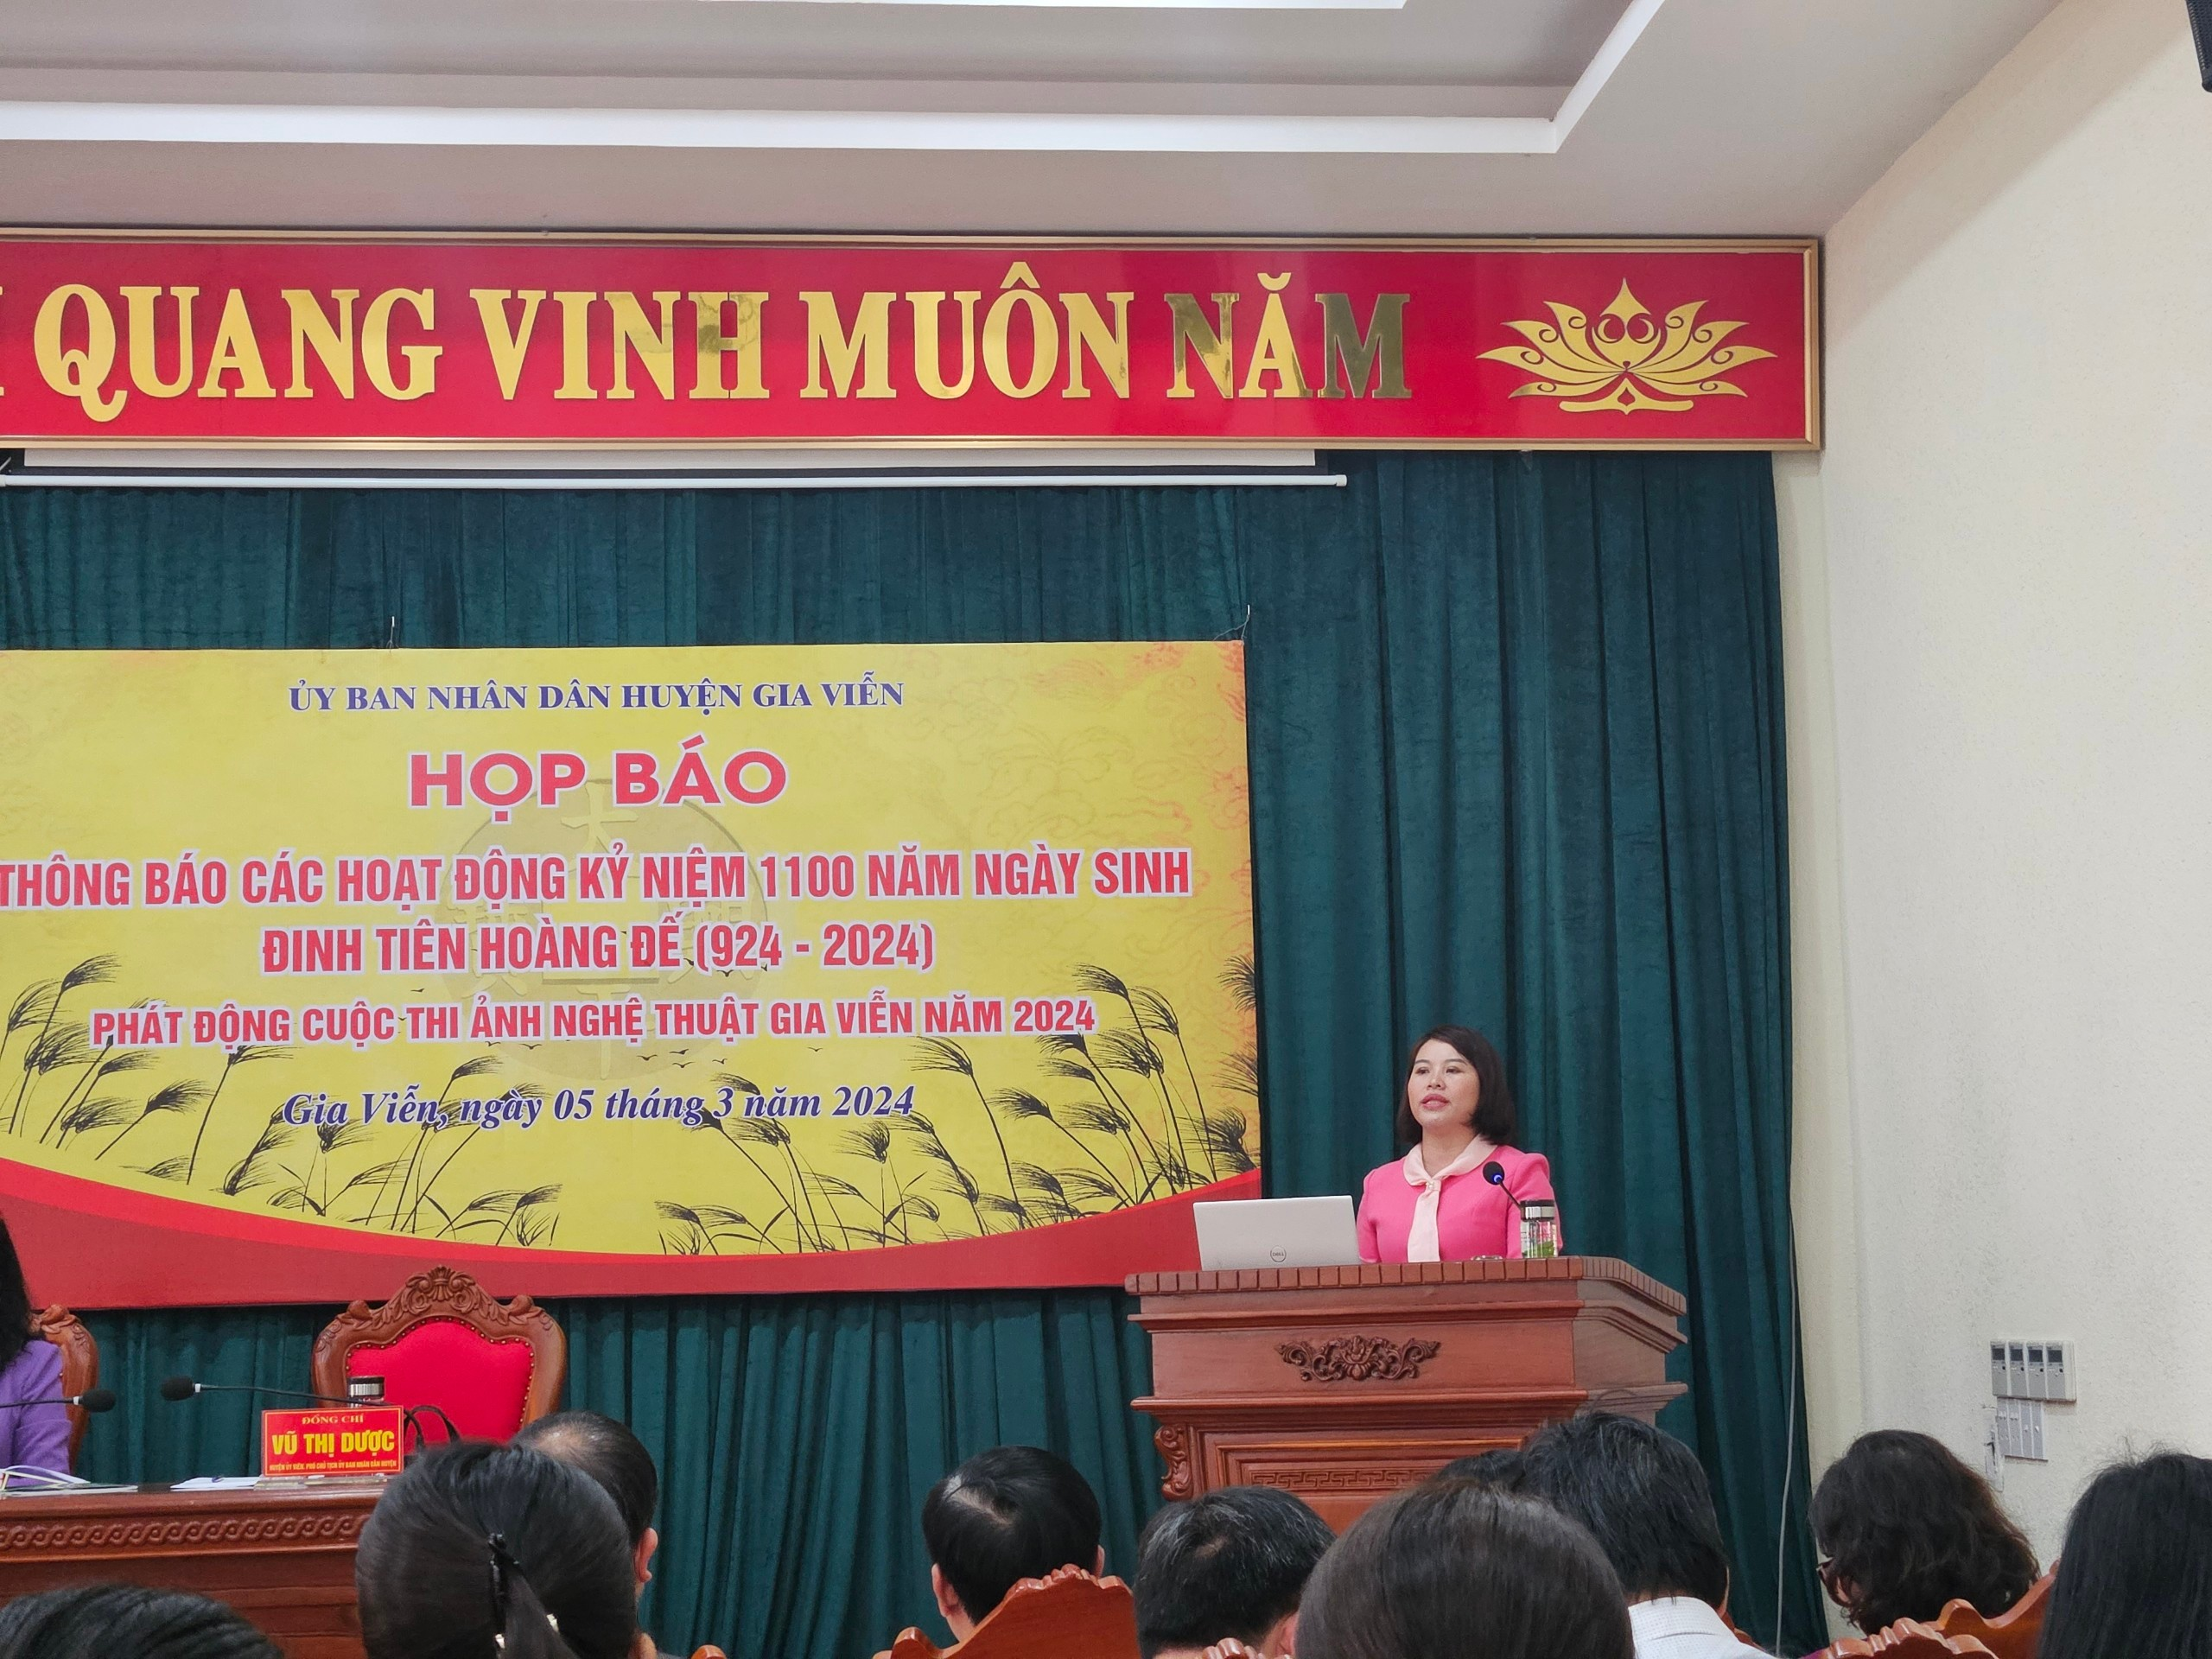 Bà Vũ Thị Dược - Phó Chủ tịch UBND huyện Gia Viễn thông tin về các hoạt động kỷ niệm 1100 năm ngày sinh Đinh Tiên Hoàng Đế (924-2024)